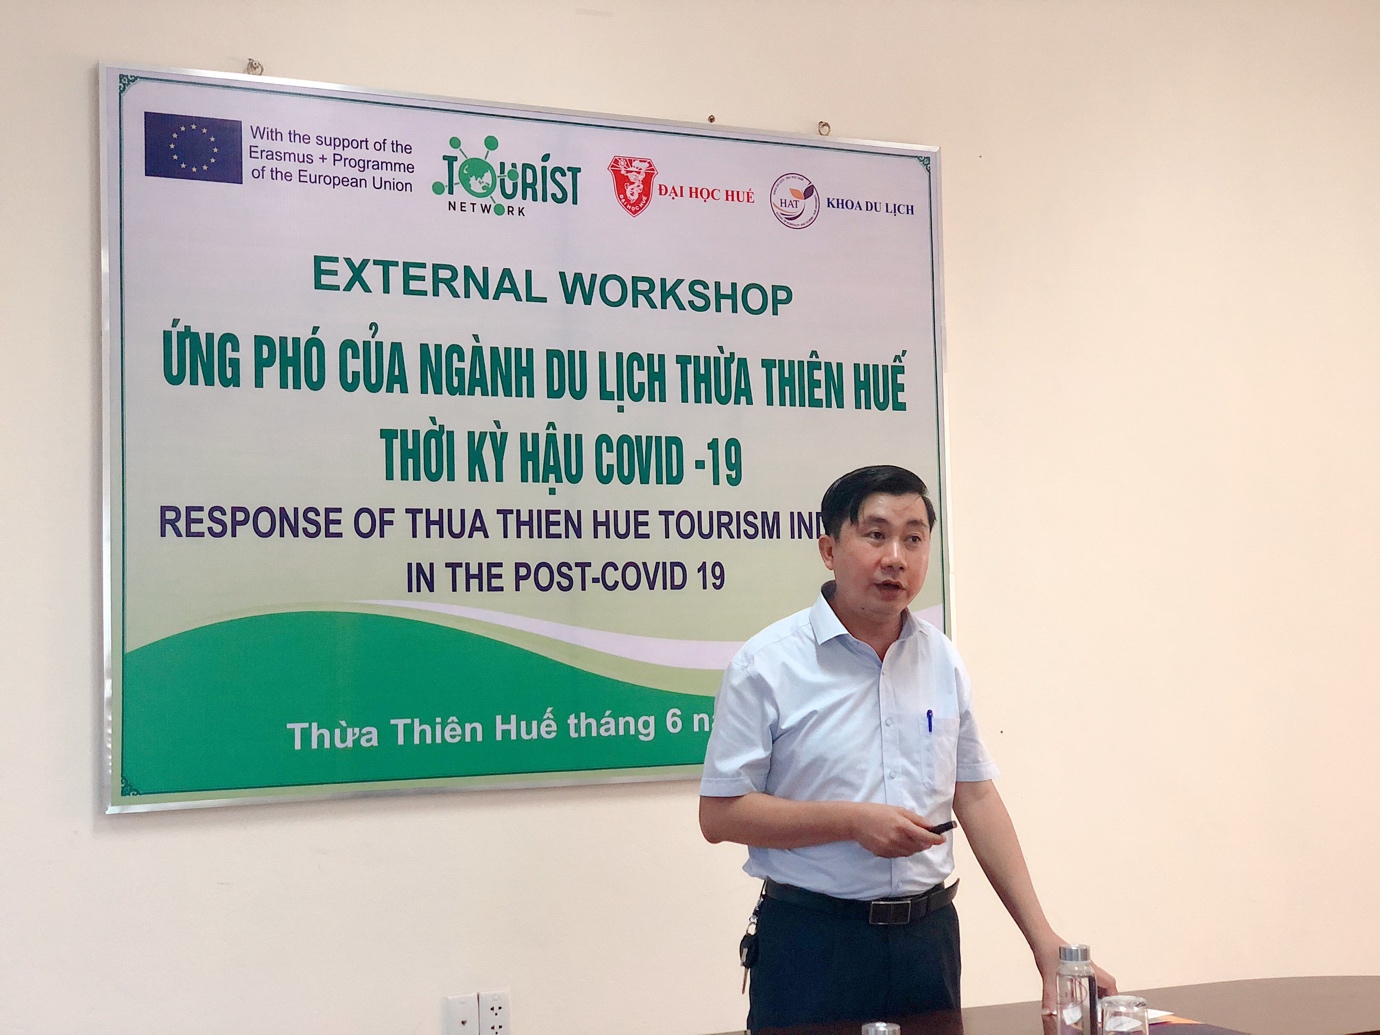 Hình 2: Ông Nguyễn Văn Phúc - Phó giám đốc Sở Du lịch Thừa Thiên Huế trình bày cáo cáo, nhận định và dự đoán thị trường Du lịch Việt Nam và Thừa Thiên Huế trước tác động to lớn của đại dịch COVID-19